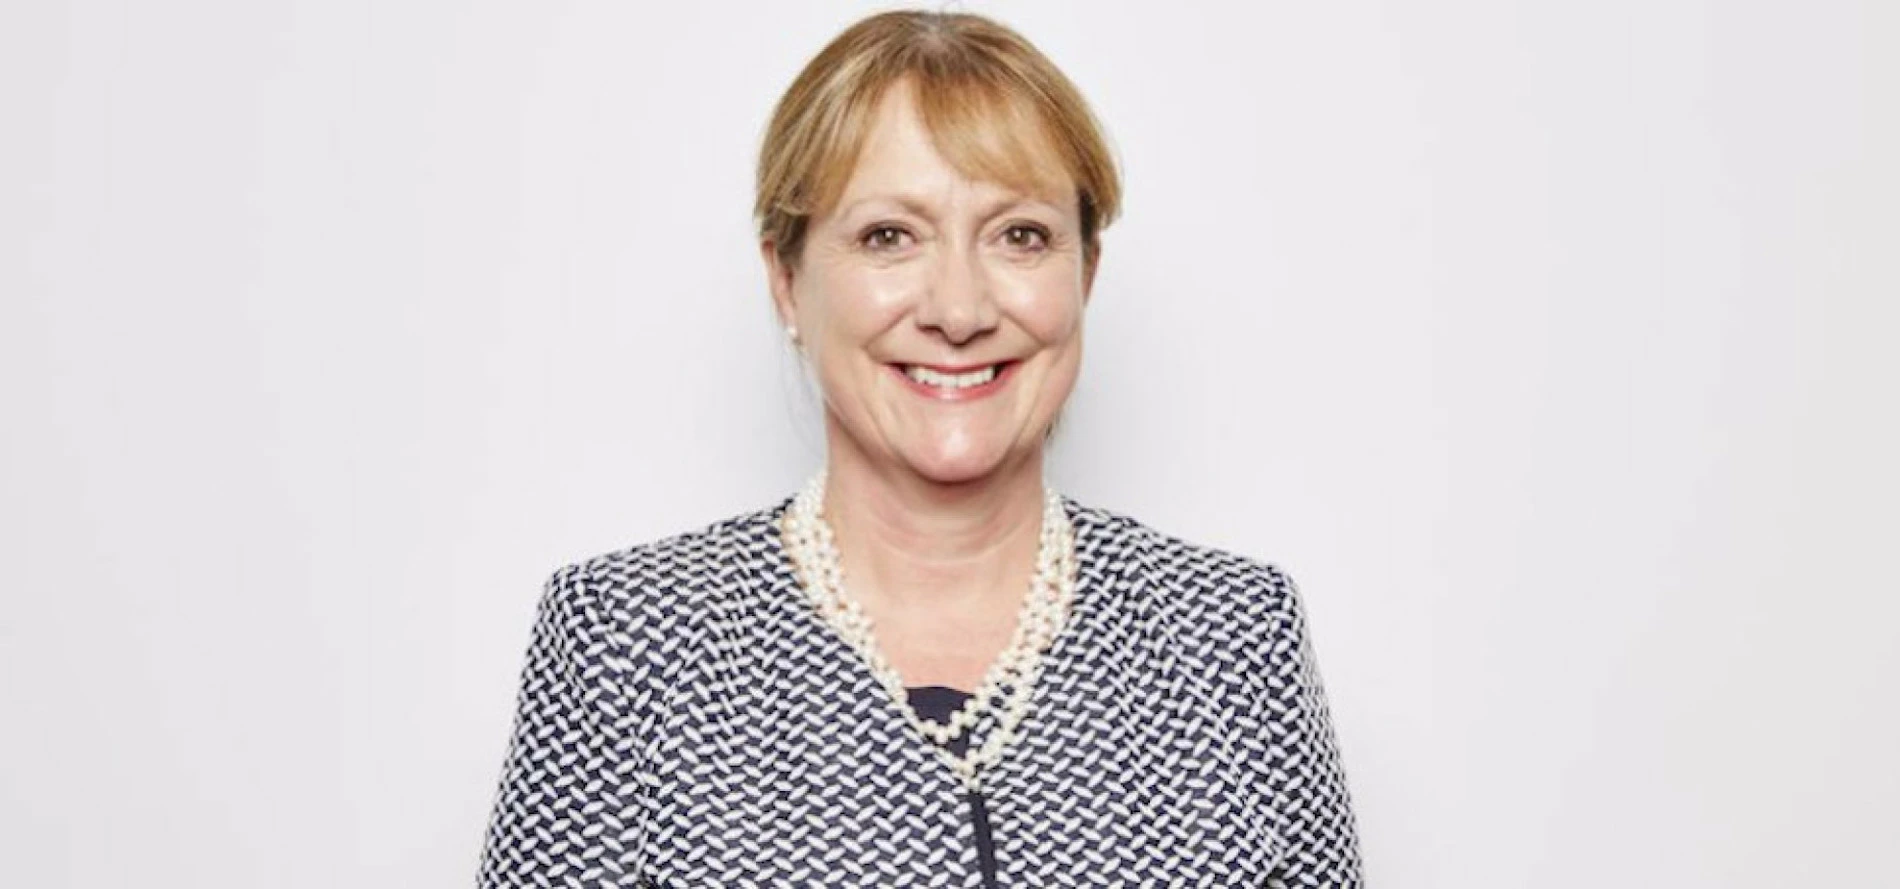 Helen Gordon, Chief Executive of Grainger